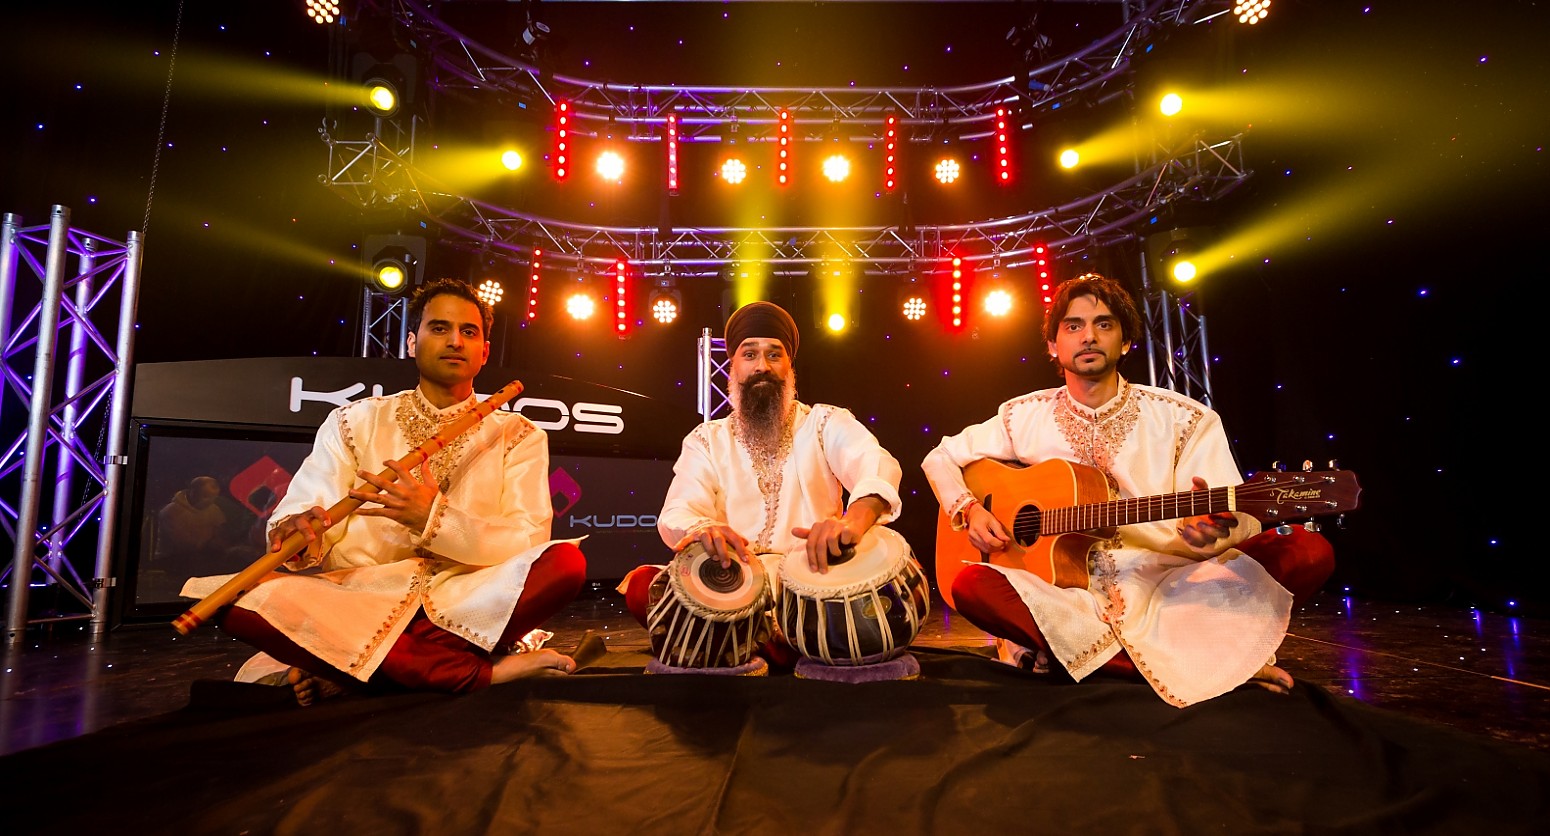 The Kudos Bollywood Fusion Band